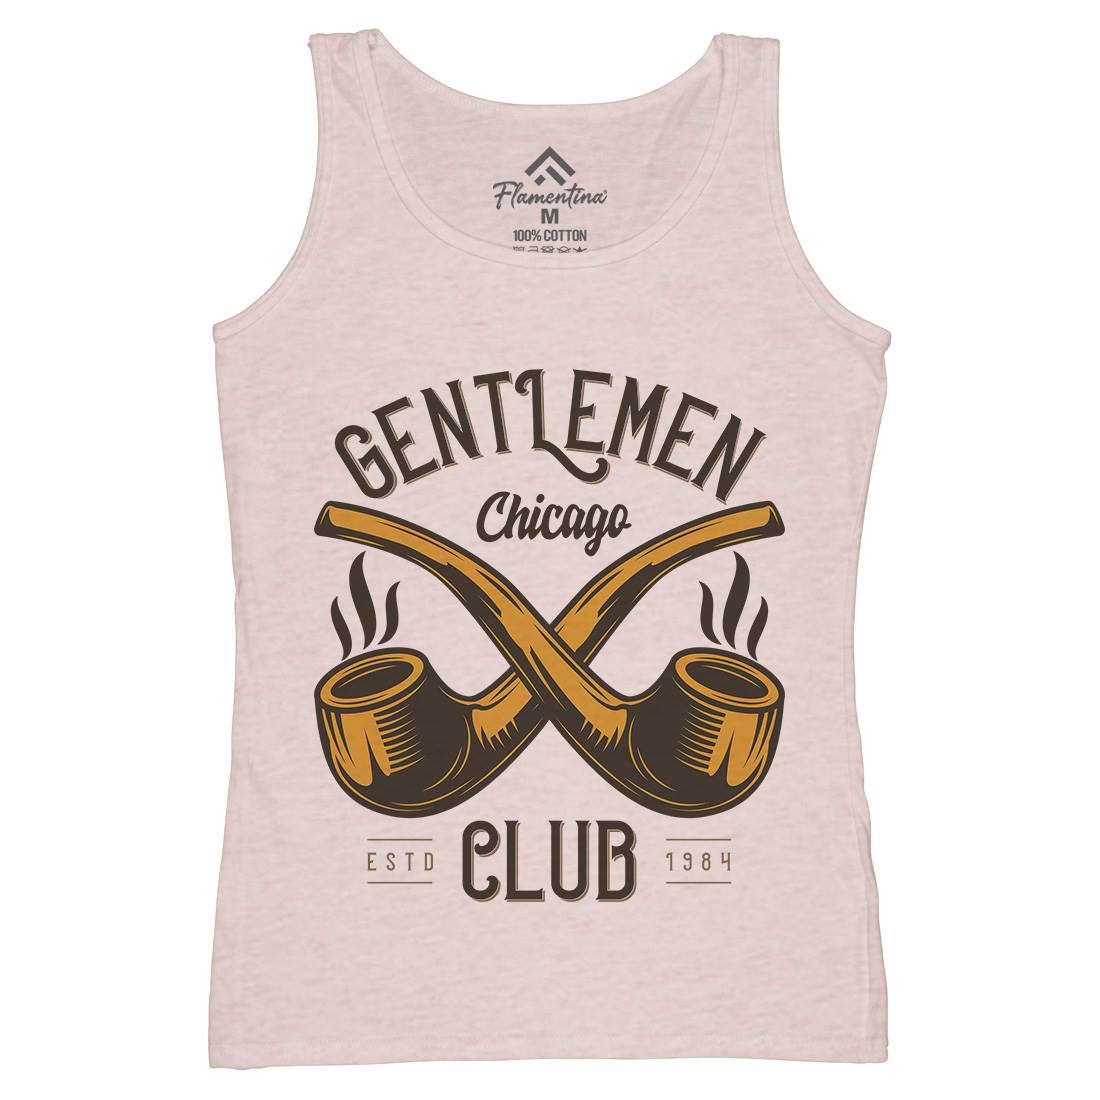 Gentlemen Club Womens Organic Tank Top Vest Barber C850